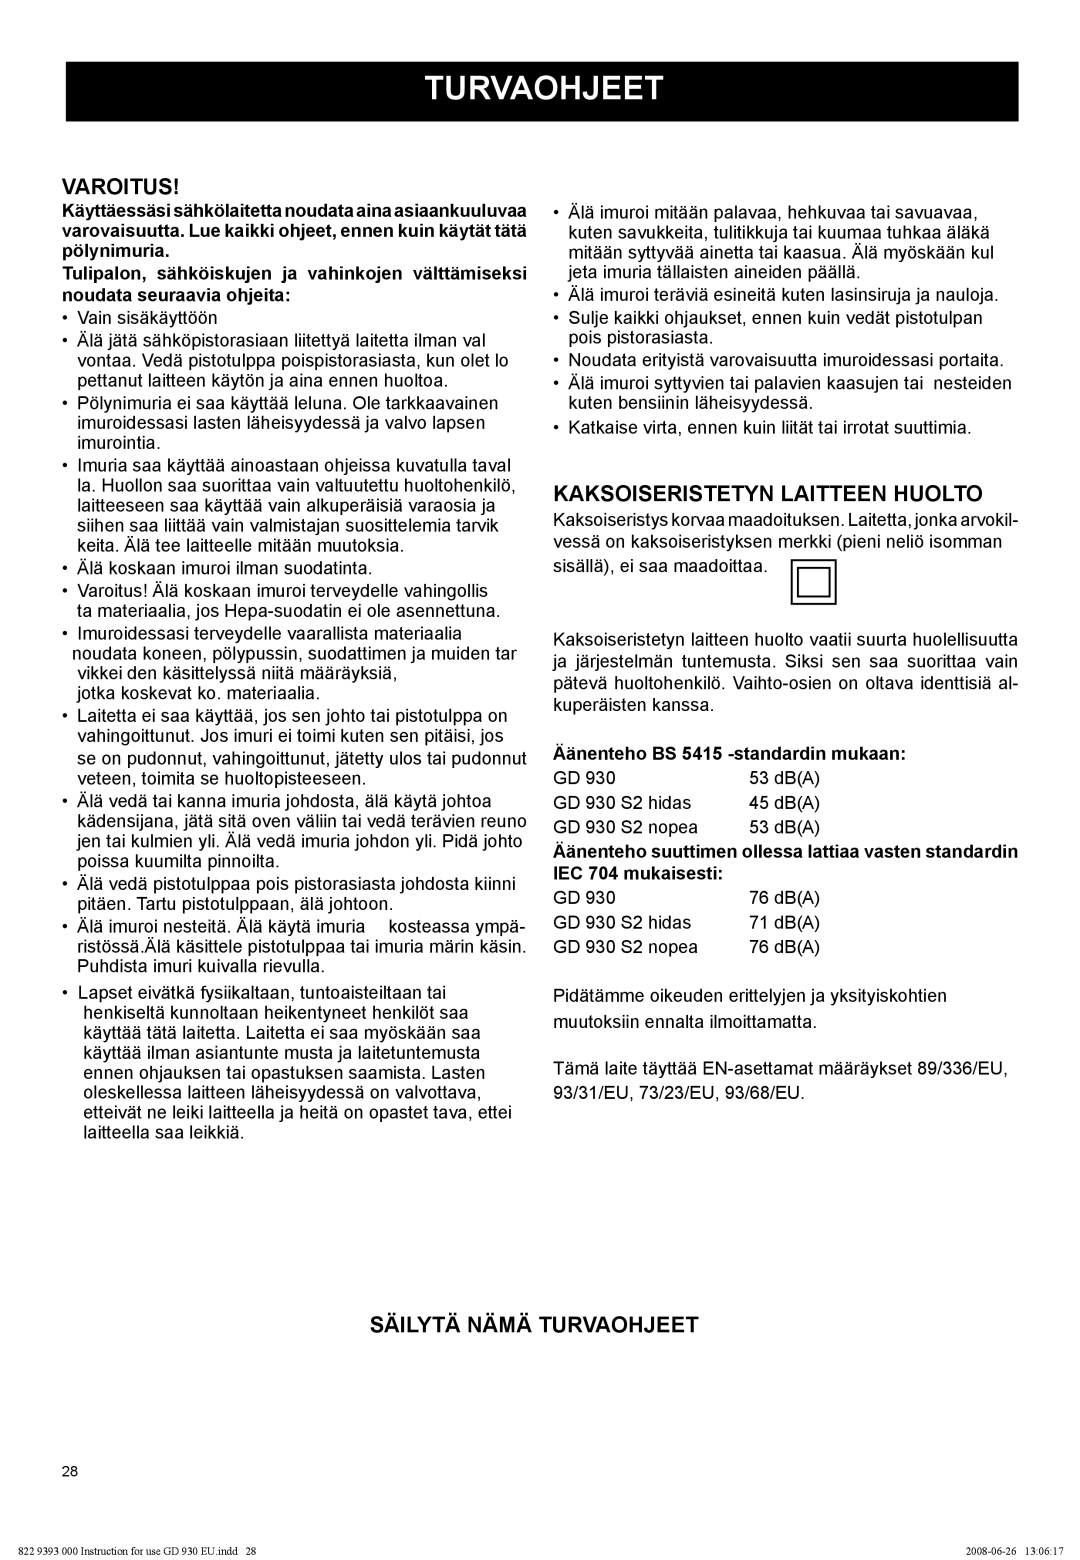 Nilfisk-Advance America GD 930S2 manual Varoitus, Kaksoiseristetyn Laitteen Huolto, Säilytä Nämä Turvaohjeet 